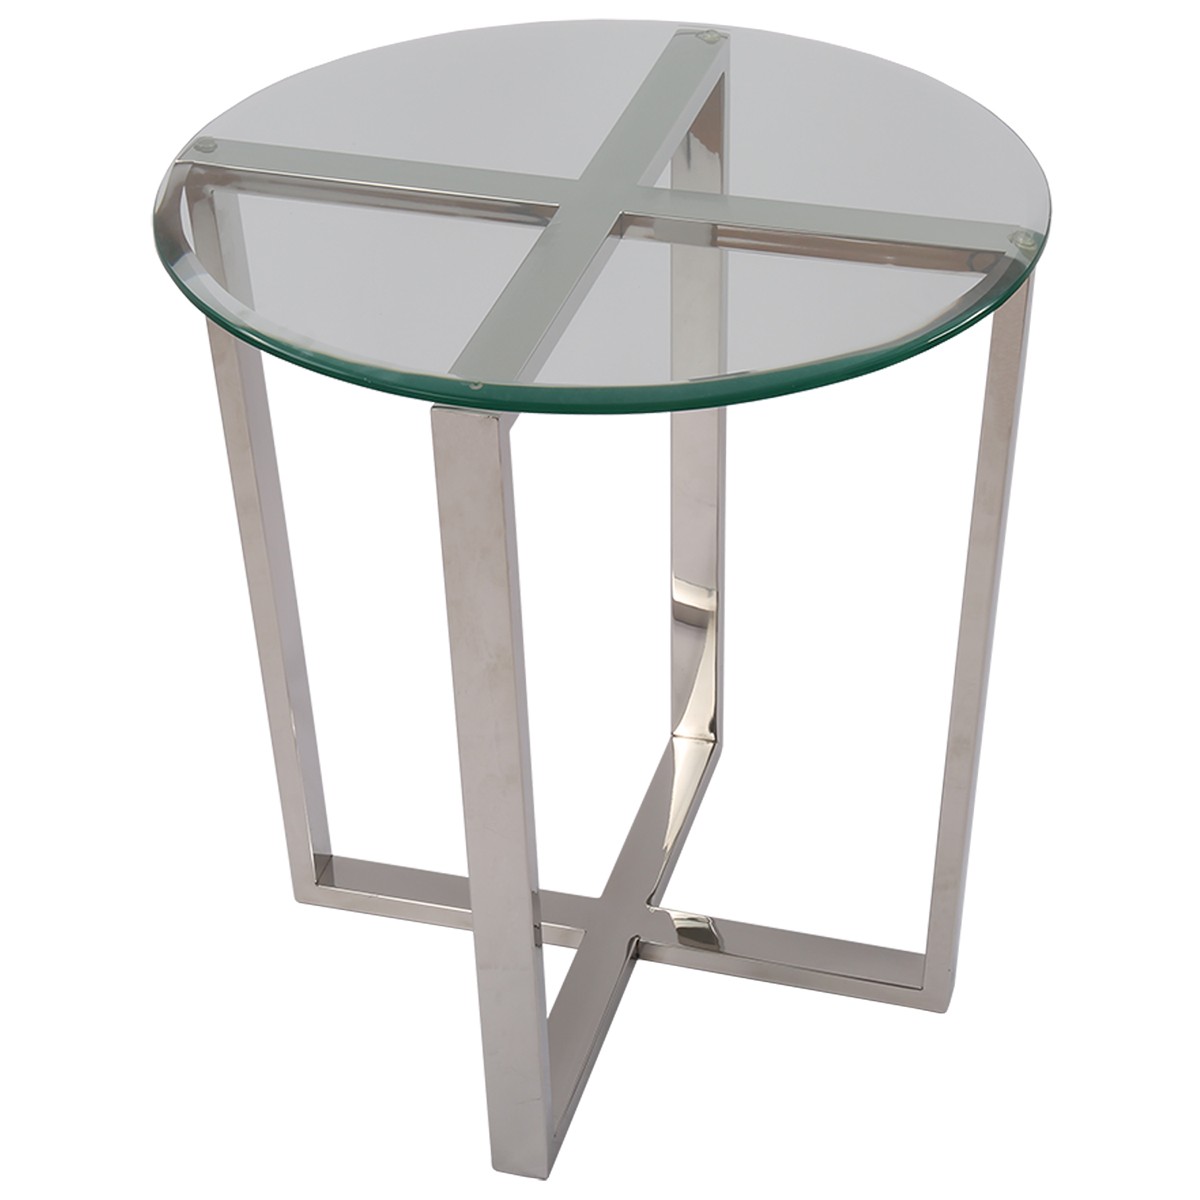 Beistelltisch rund Glas-Metall, Tisch Glas verchromt ...